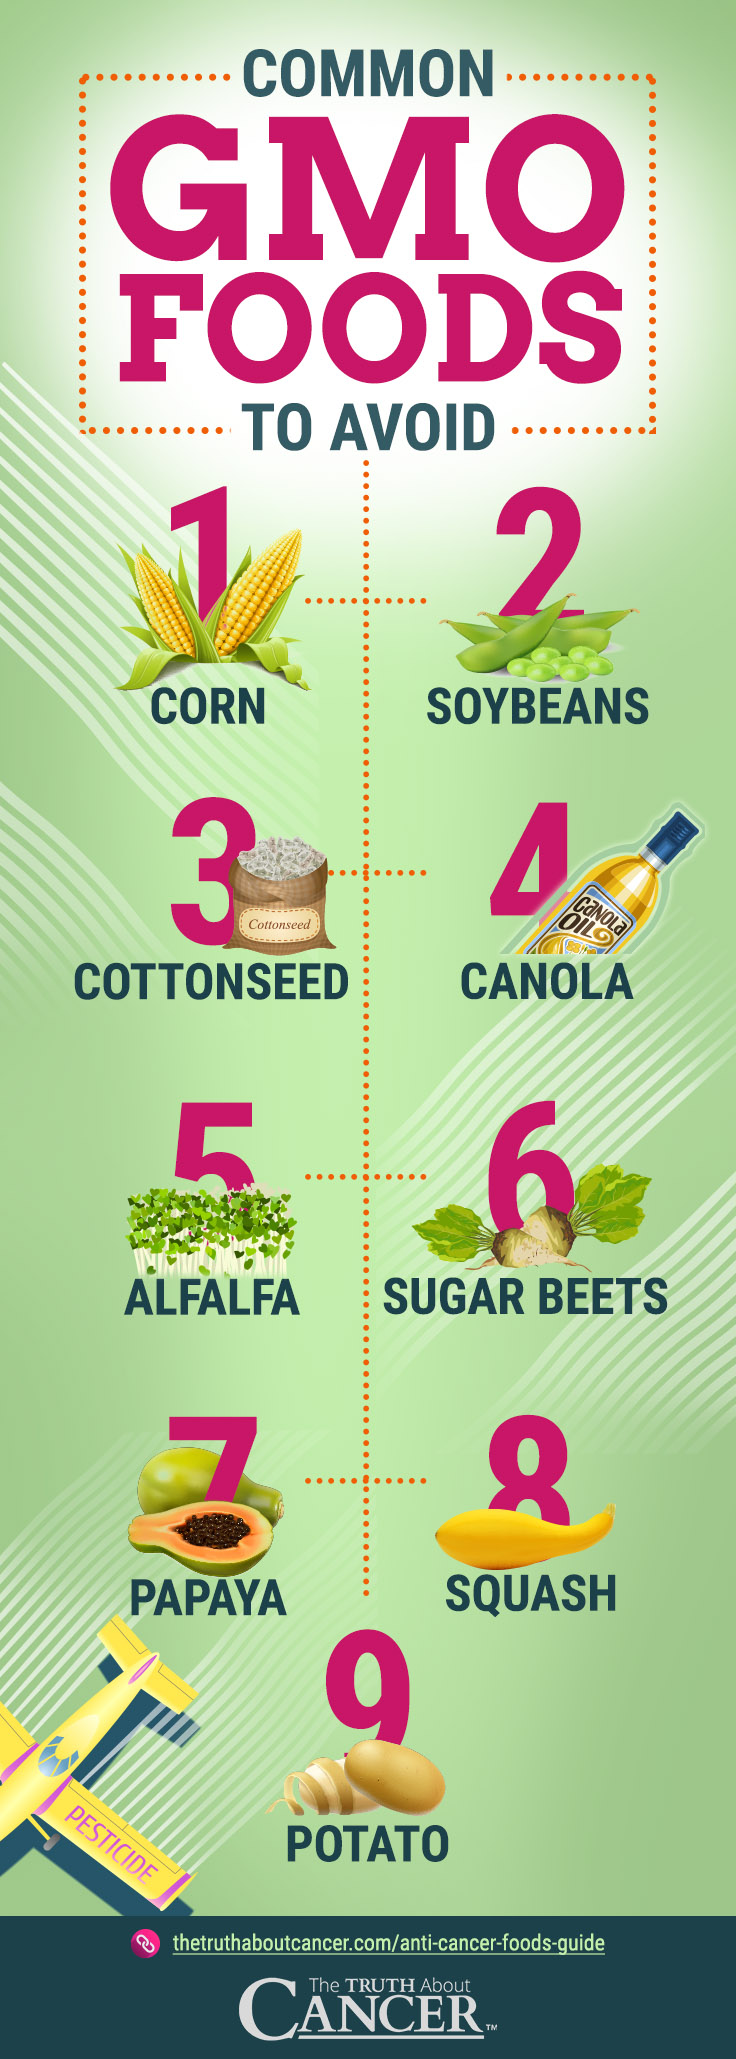 Common GMO Foods to Avoid